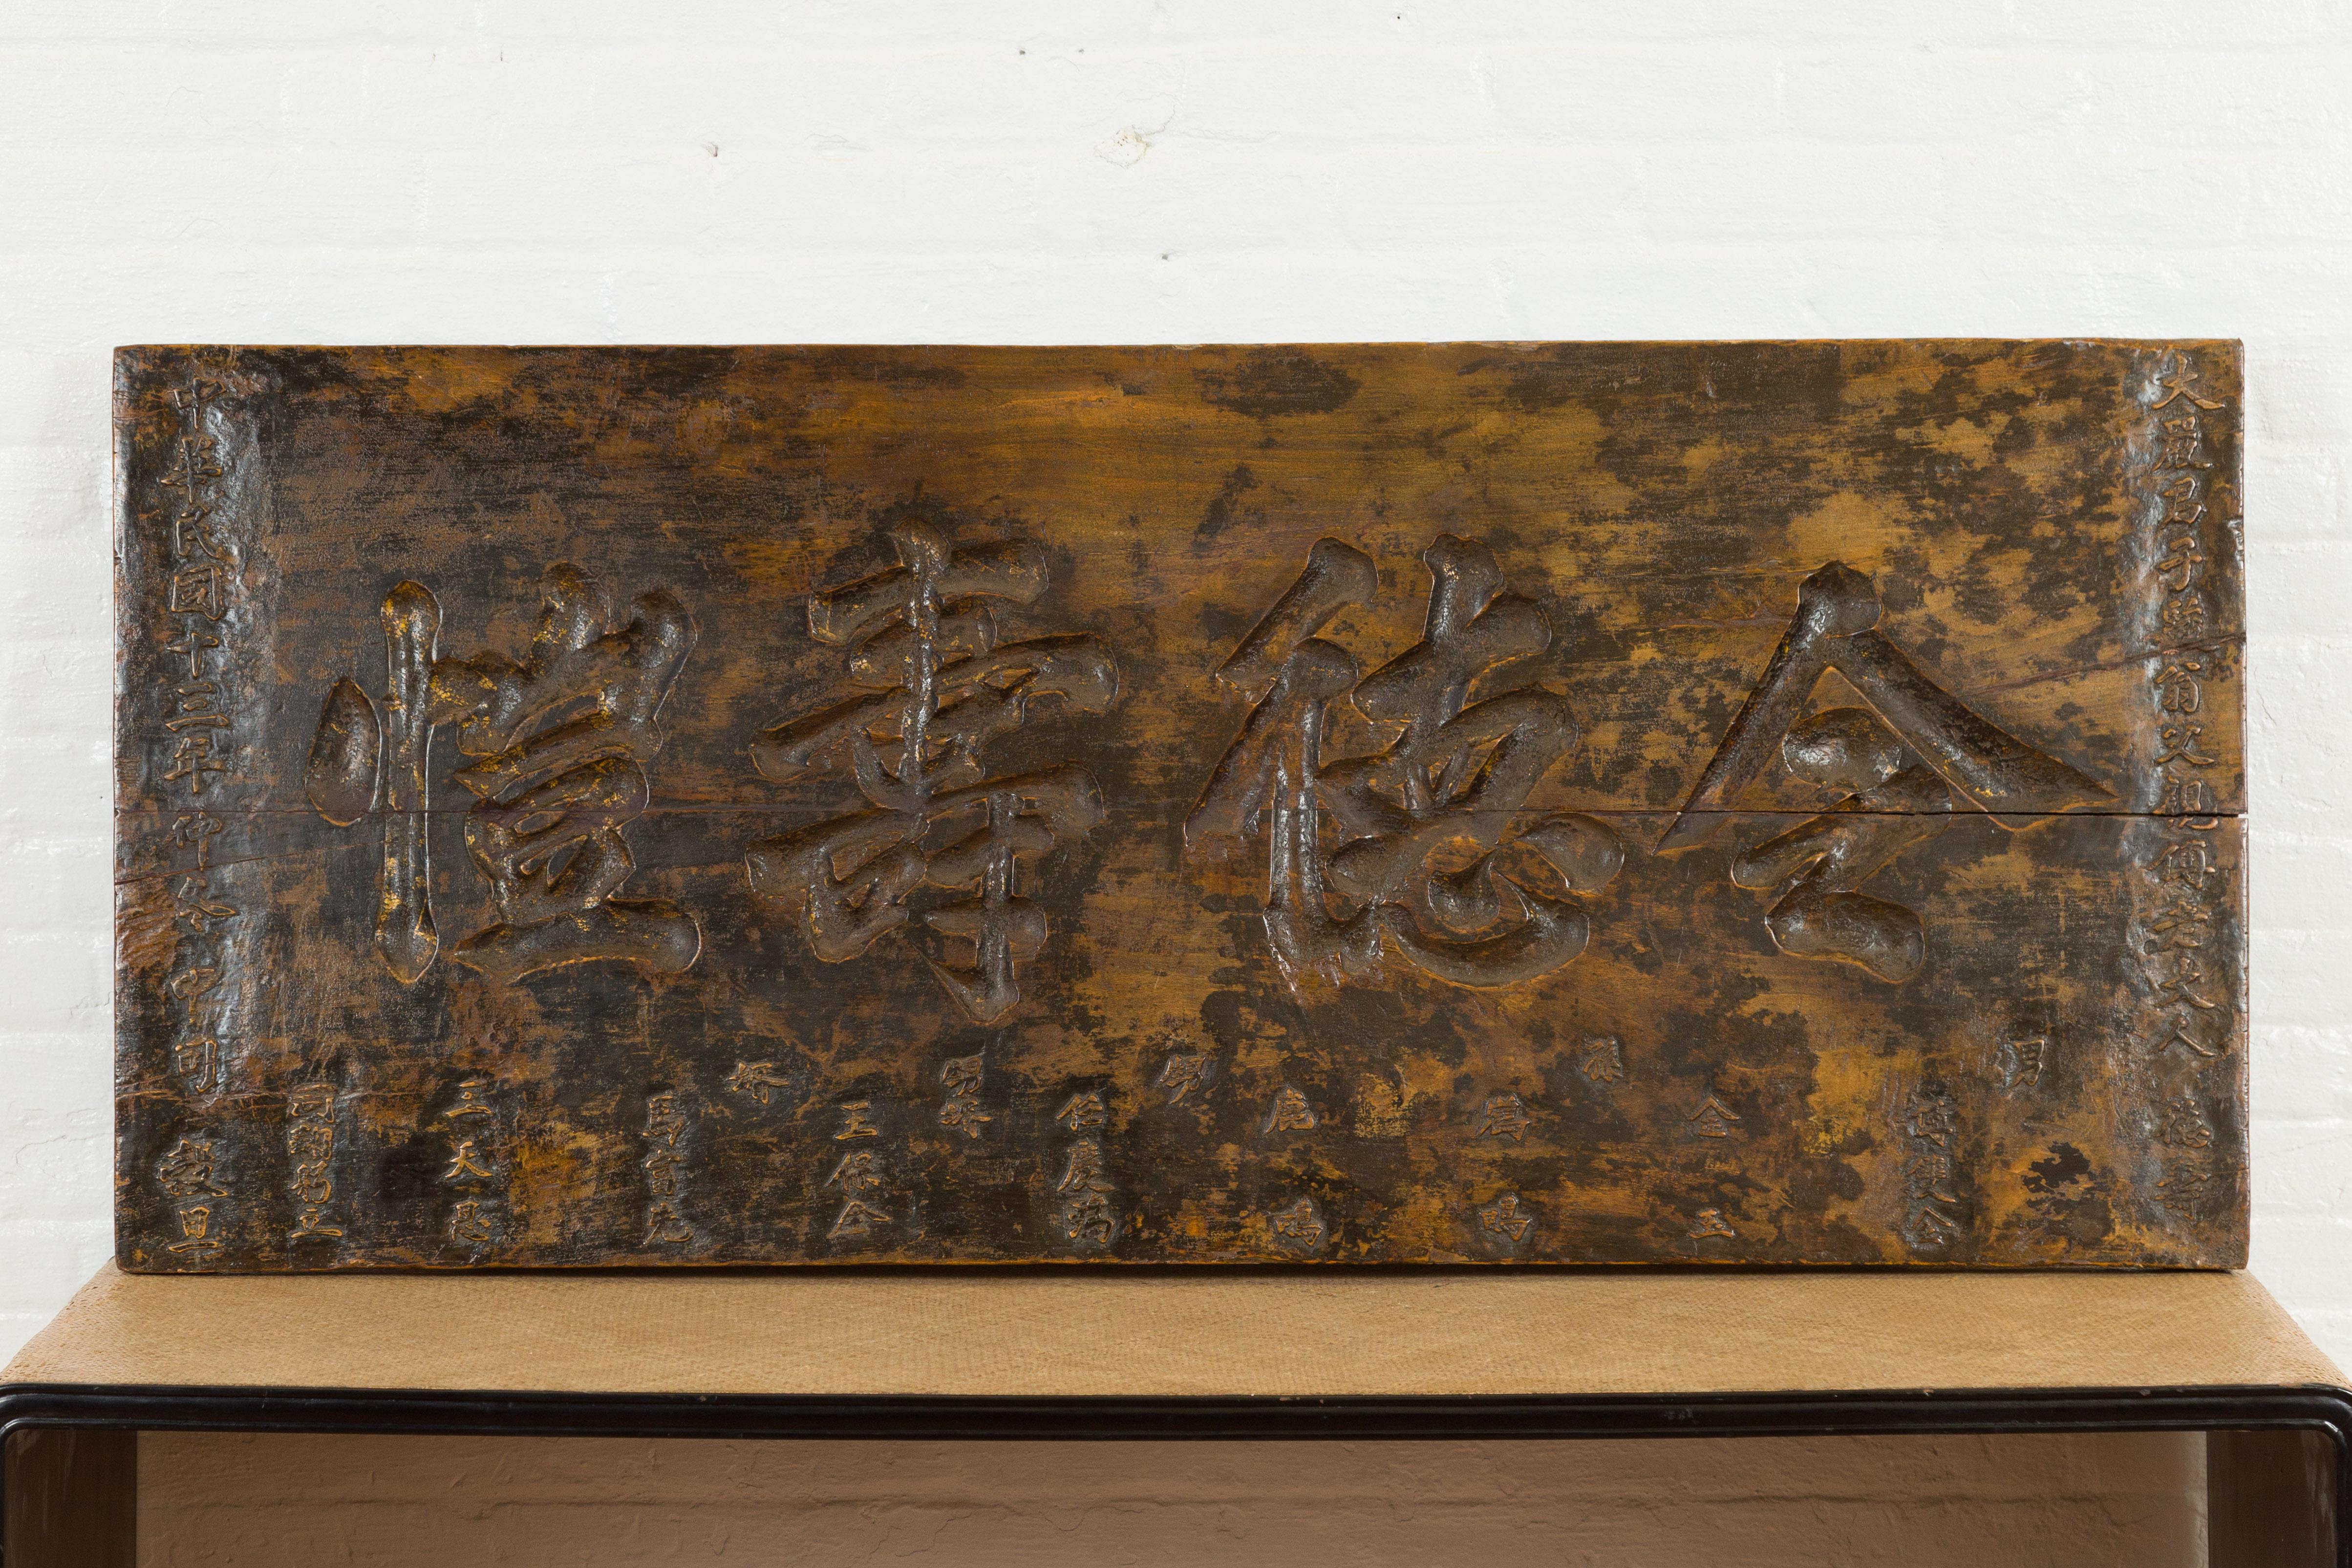 Eine rechteckige chinesische Ladenschildtafel aus dem 19. Jahrhundert mit Kalligraphie und dunkelbrauner Patina. Dieses in China gefertigte Ladenschild zeichnet sich durch eine klare rechteckige Silhouette aus, die einfach mit Kalligraphie verziert